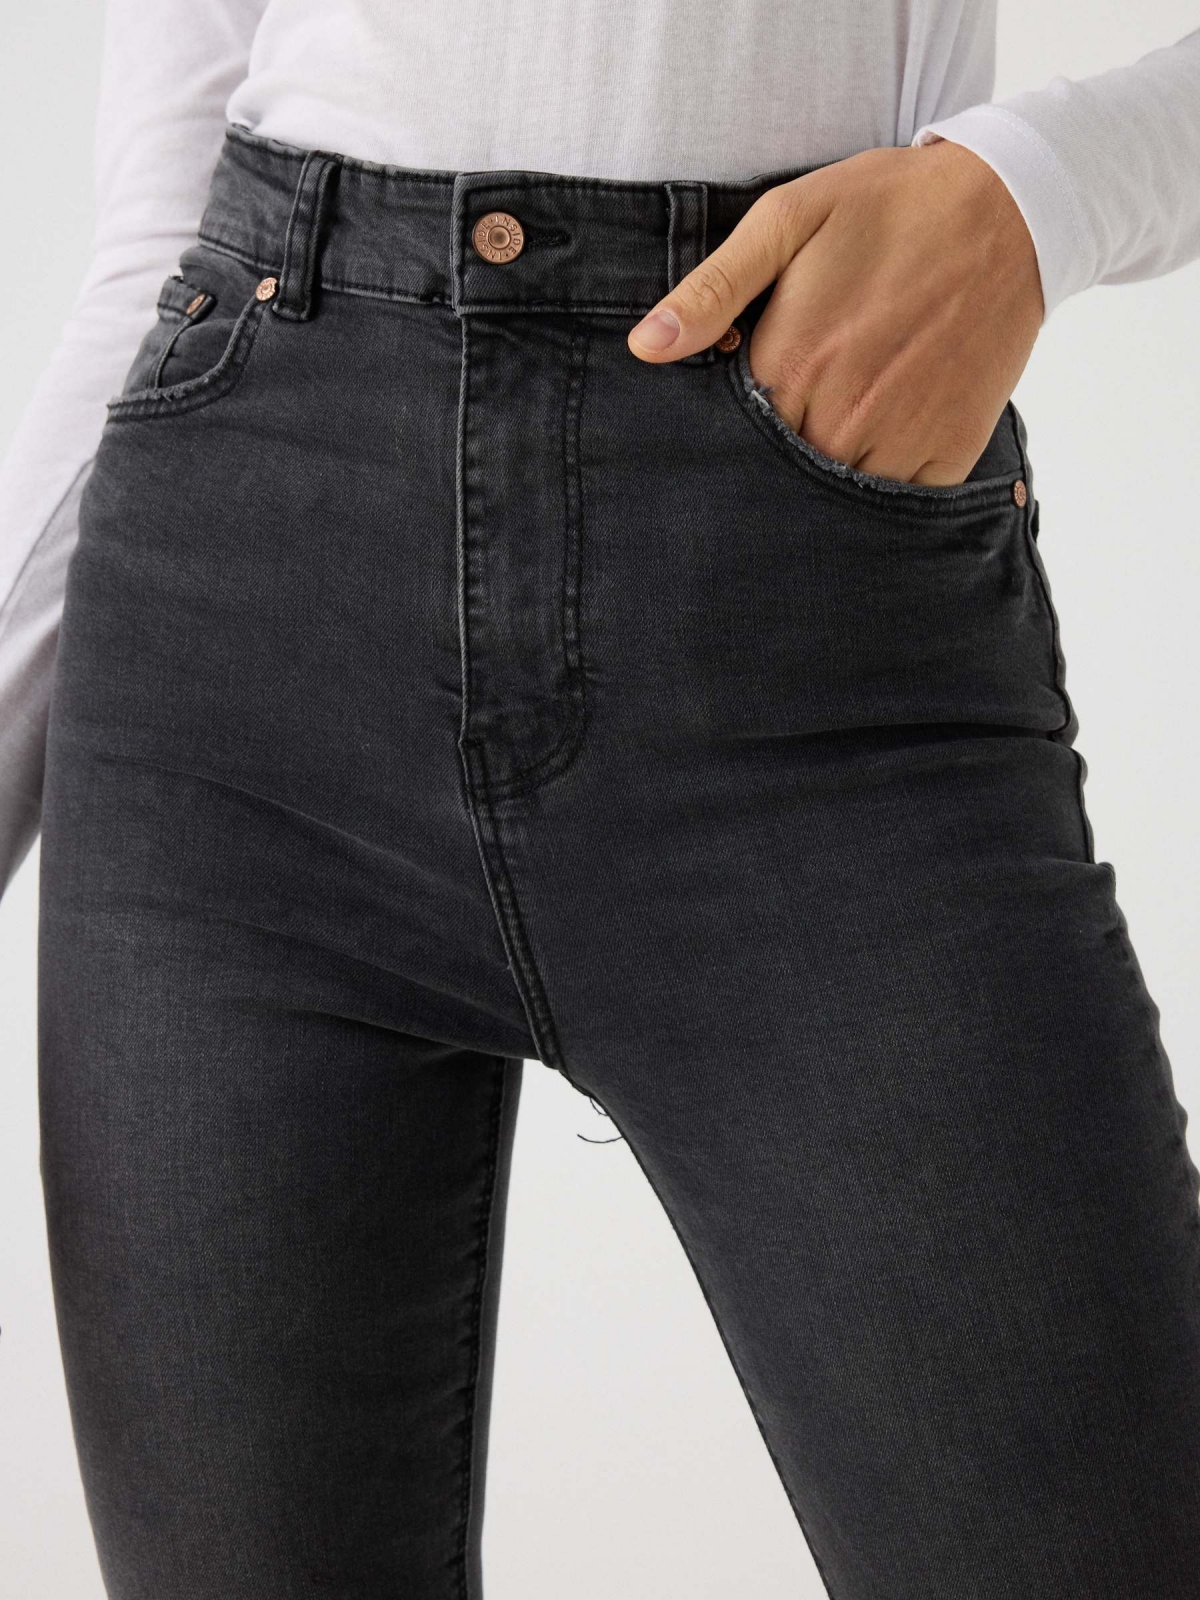 Jeans skinny cintura alta efeito lavado preto preto vista detalhe